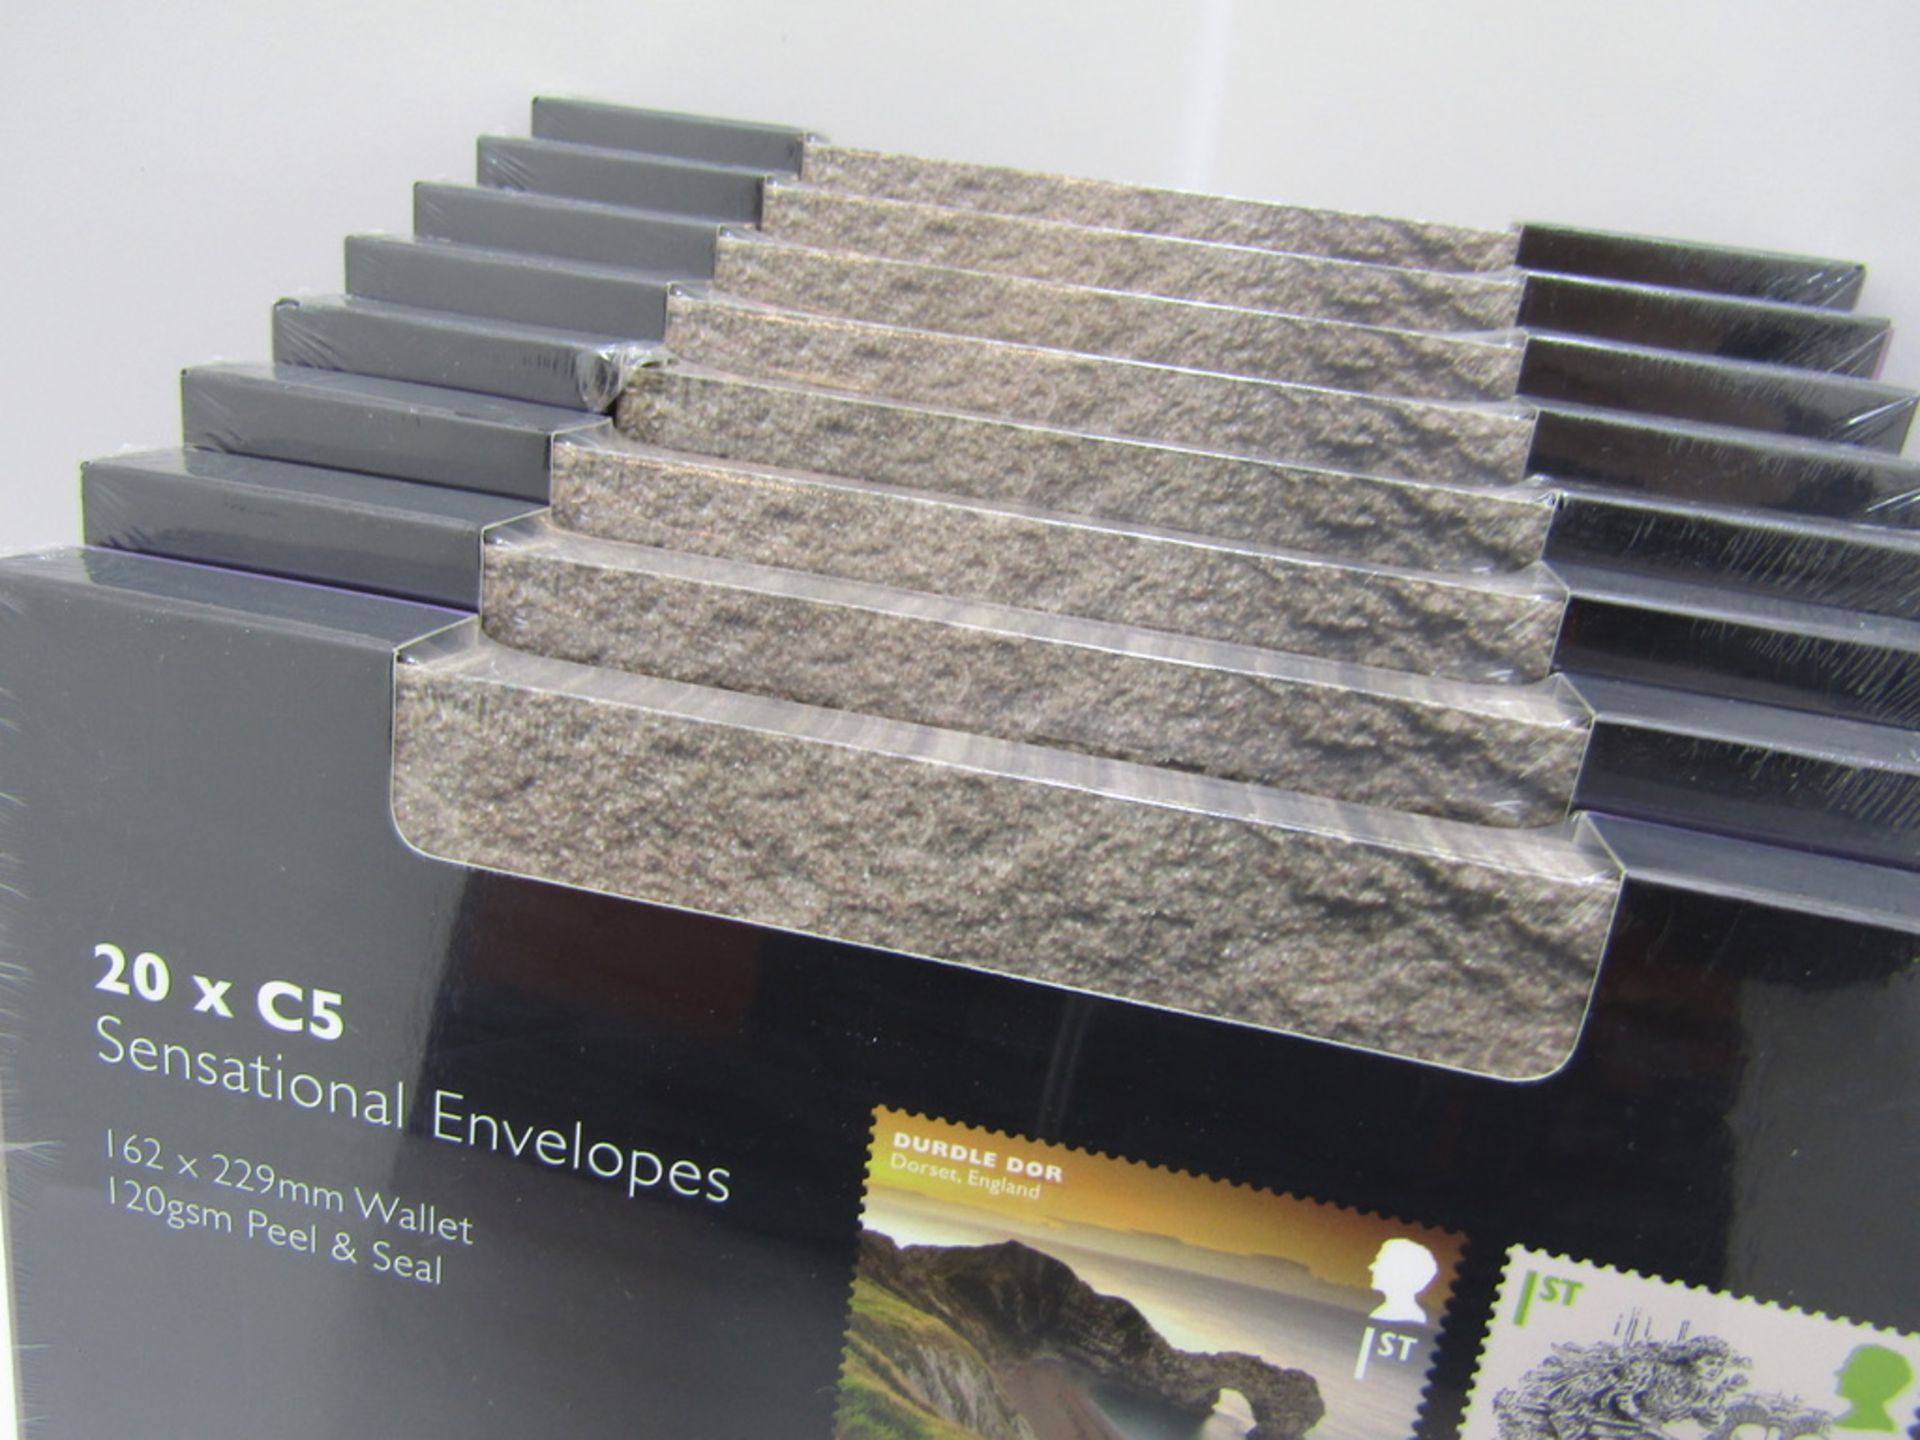 8 x packs of Gift Envelopes in Granite finish - Image 2 of 8